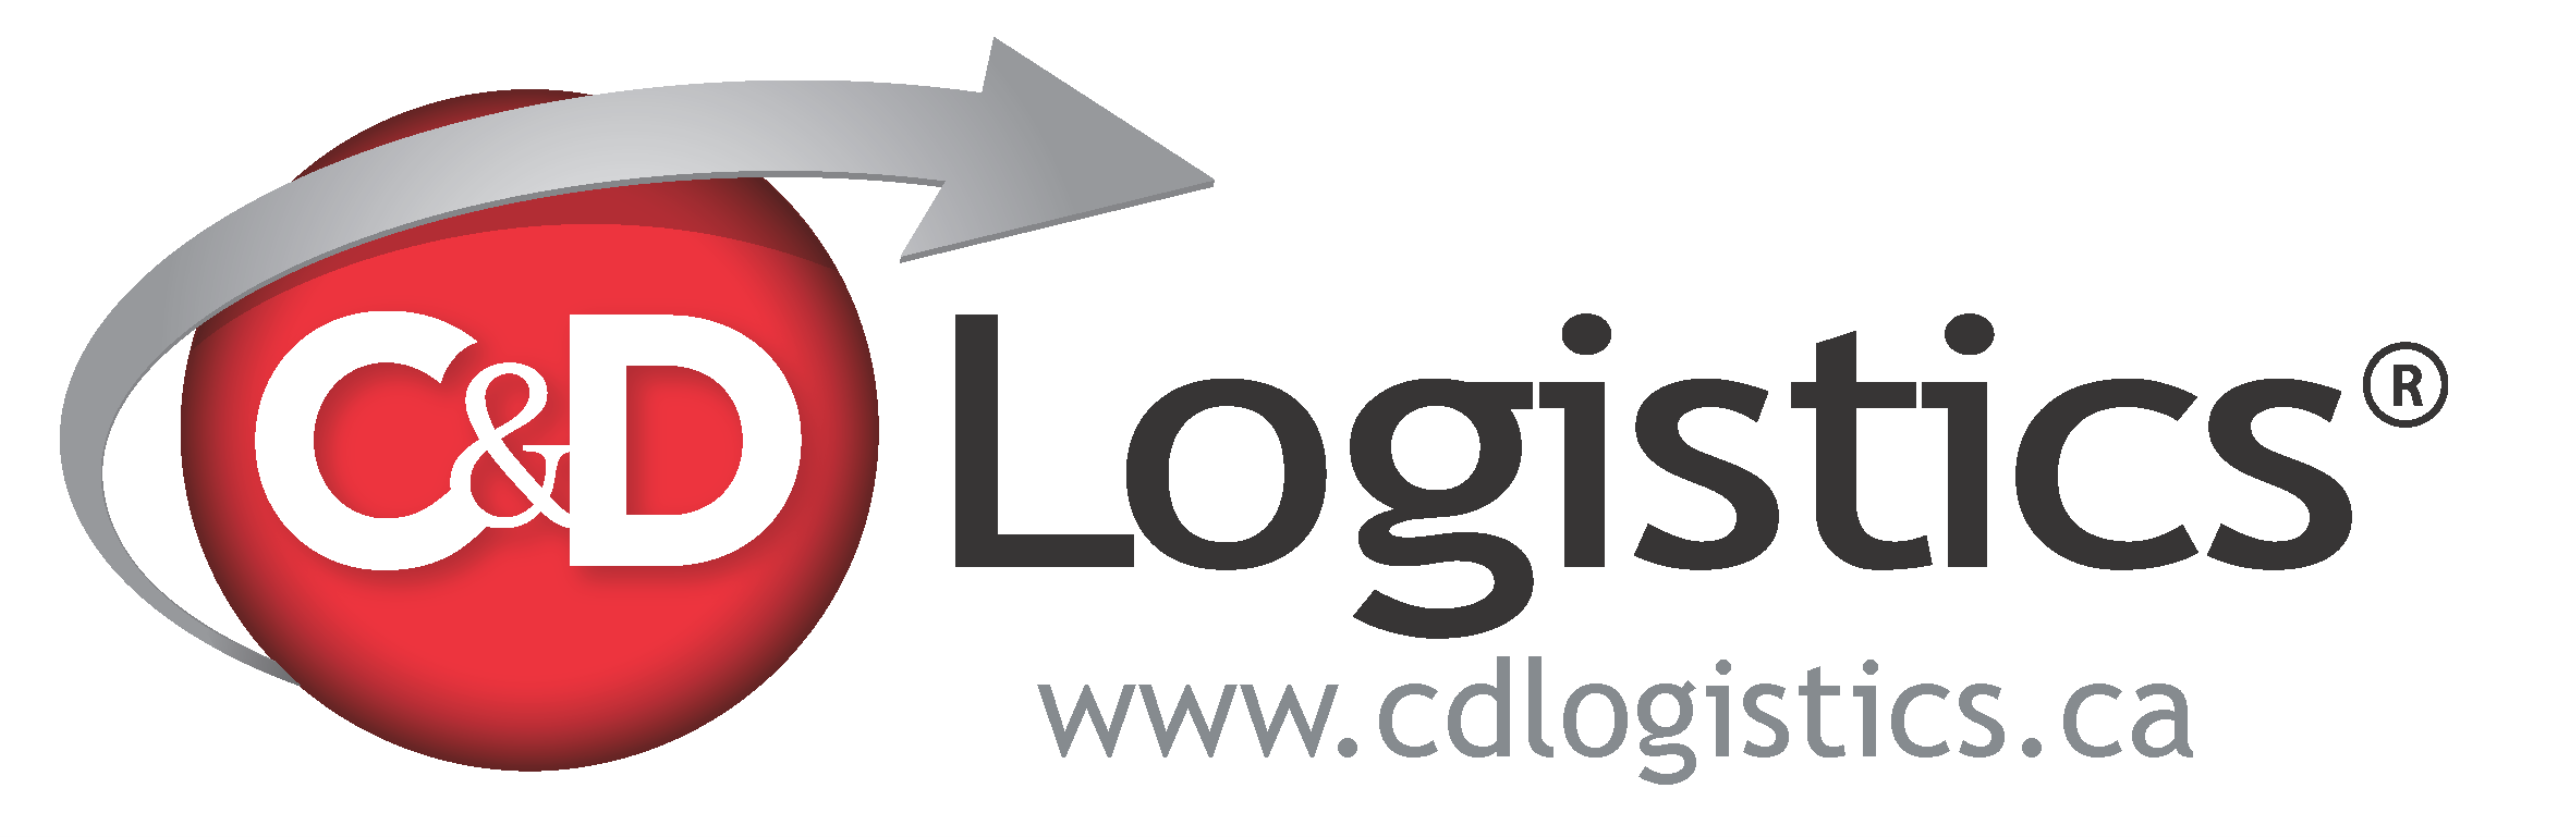 C&D Logistics Ltd Logo